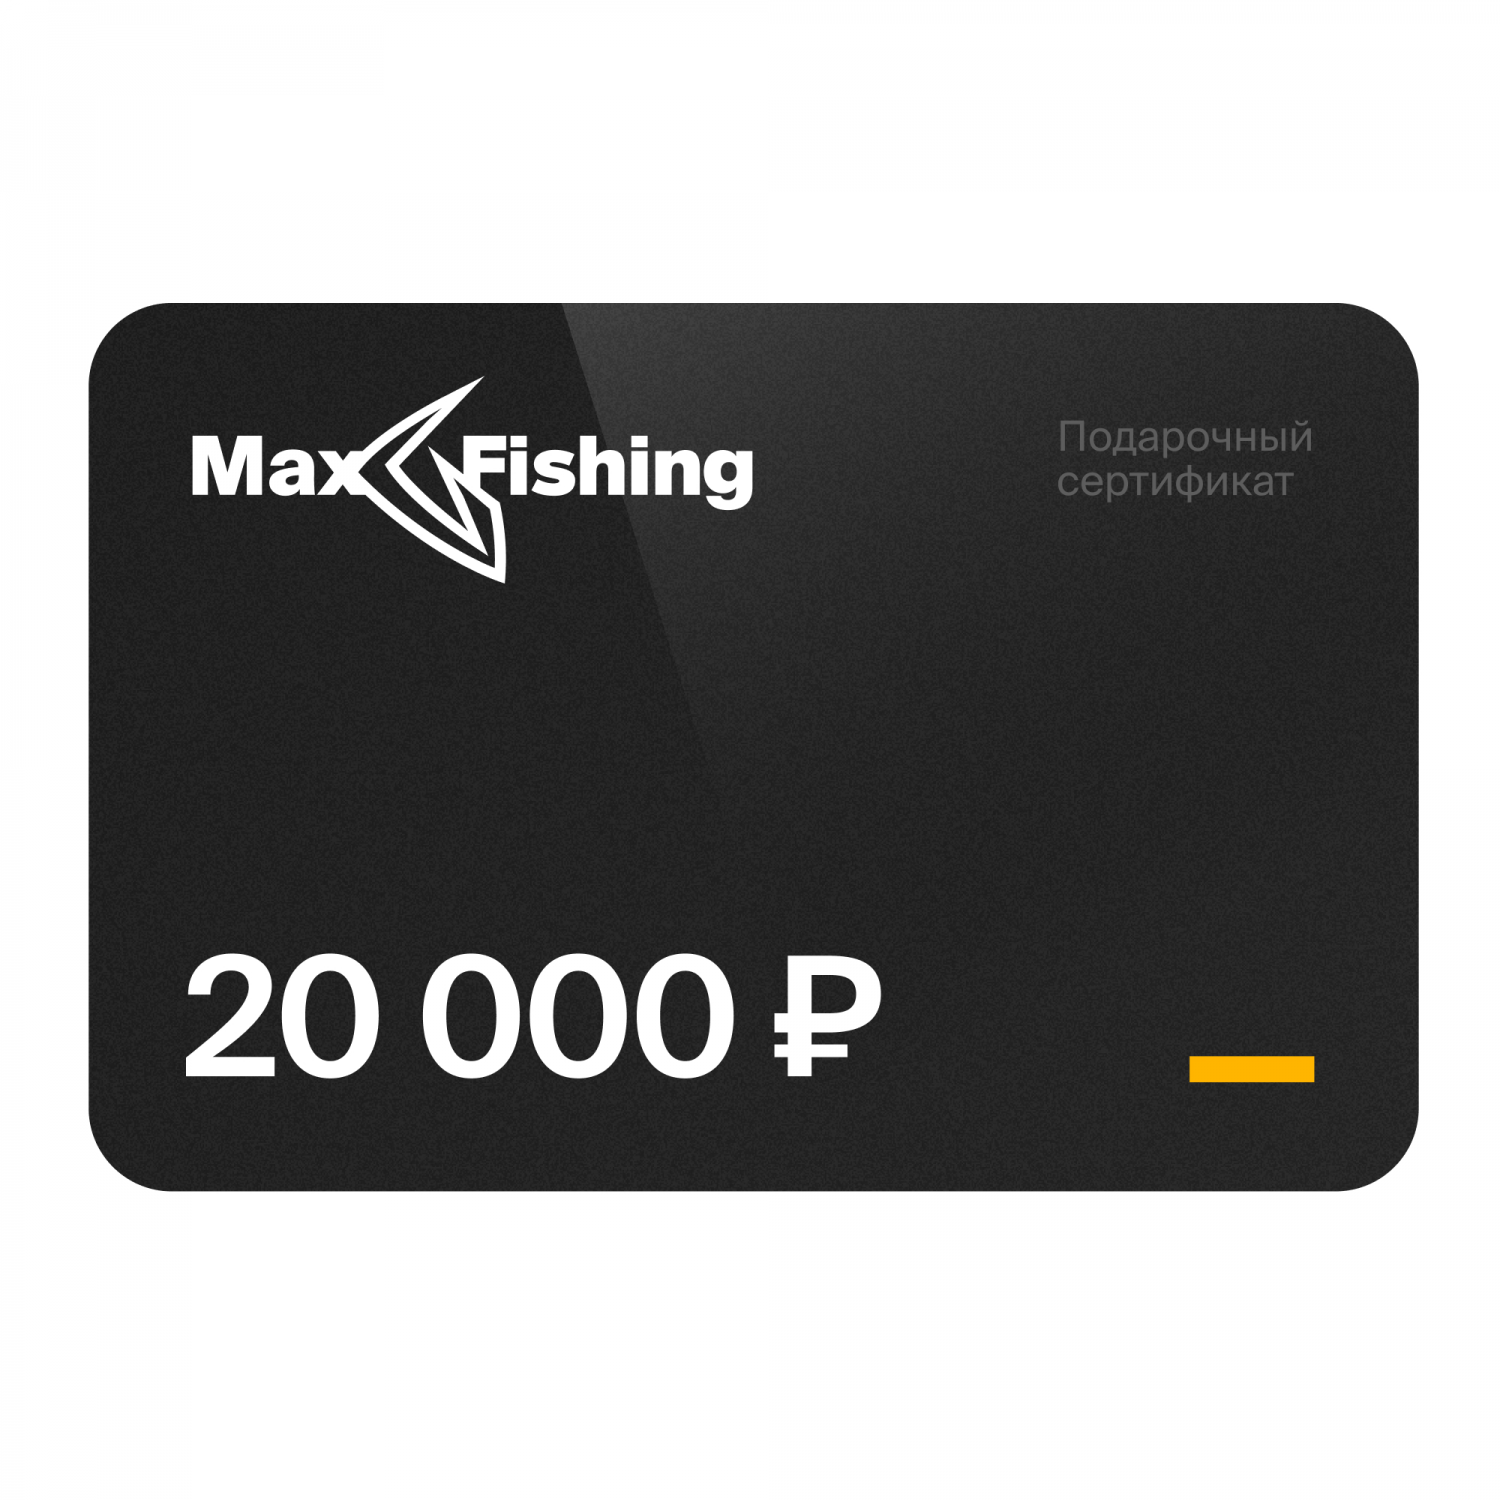 Подарочный сертификат MaxFishing 20 000 ₽ подарочный сертификат maxfishing 5